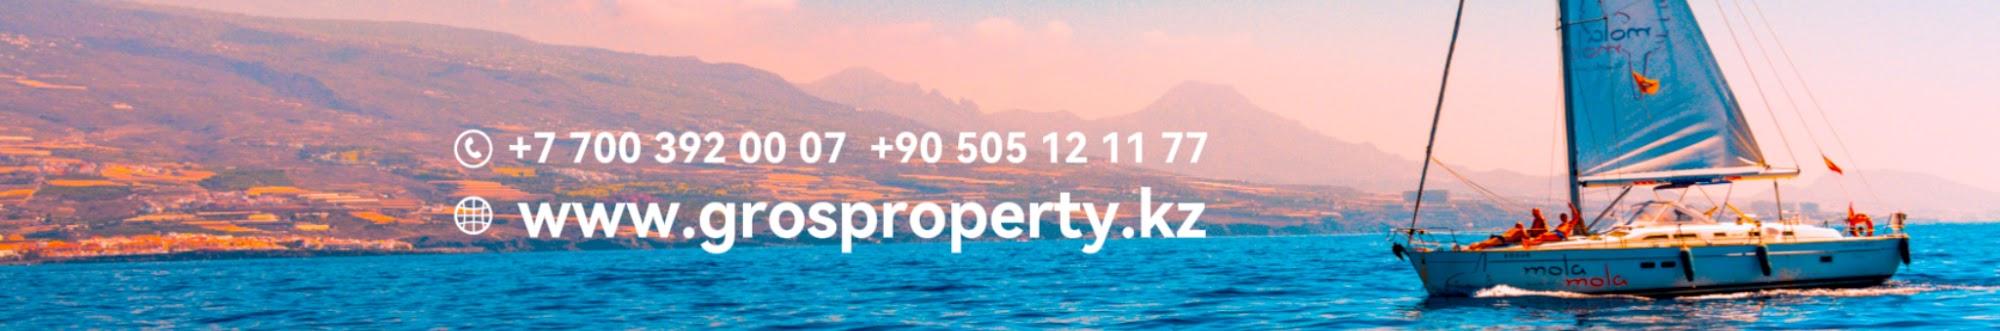 Недвижимость в Алании  | Gros property